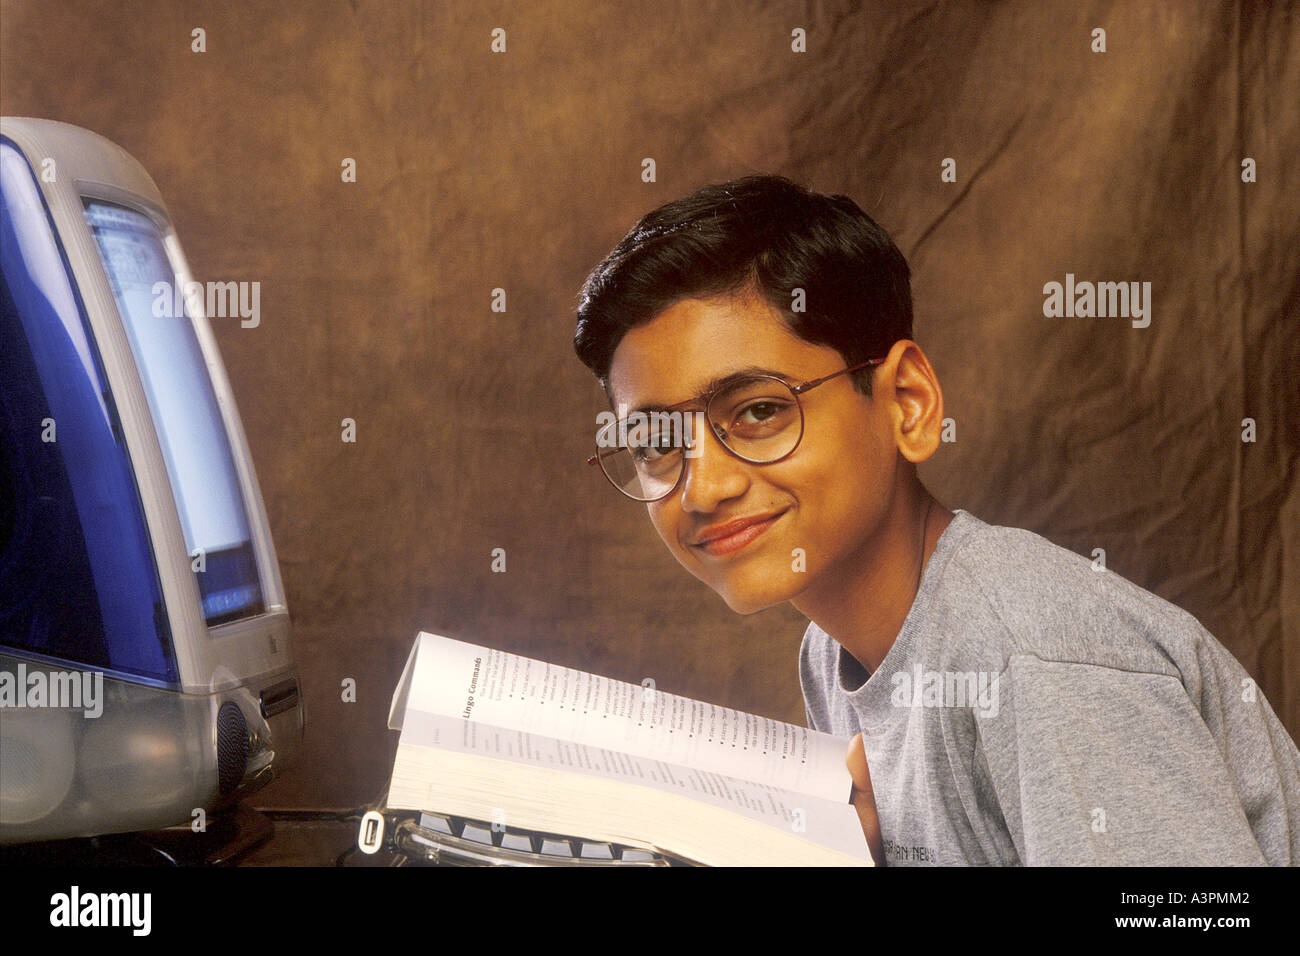 Indian giovane ragazzo indossa specs guardando si lavora sul computer - Modello di rilascio 518 Foto Stock